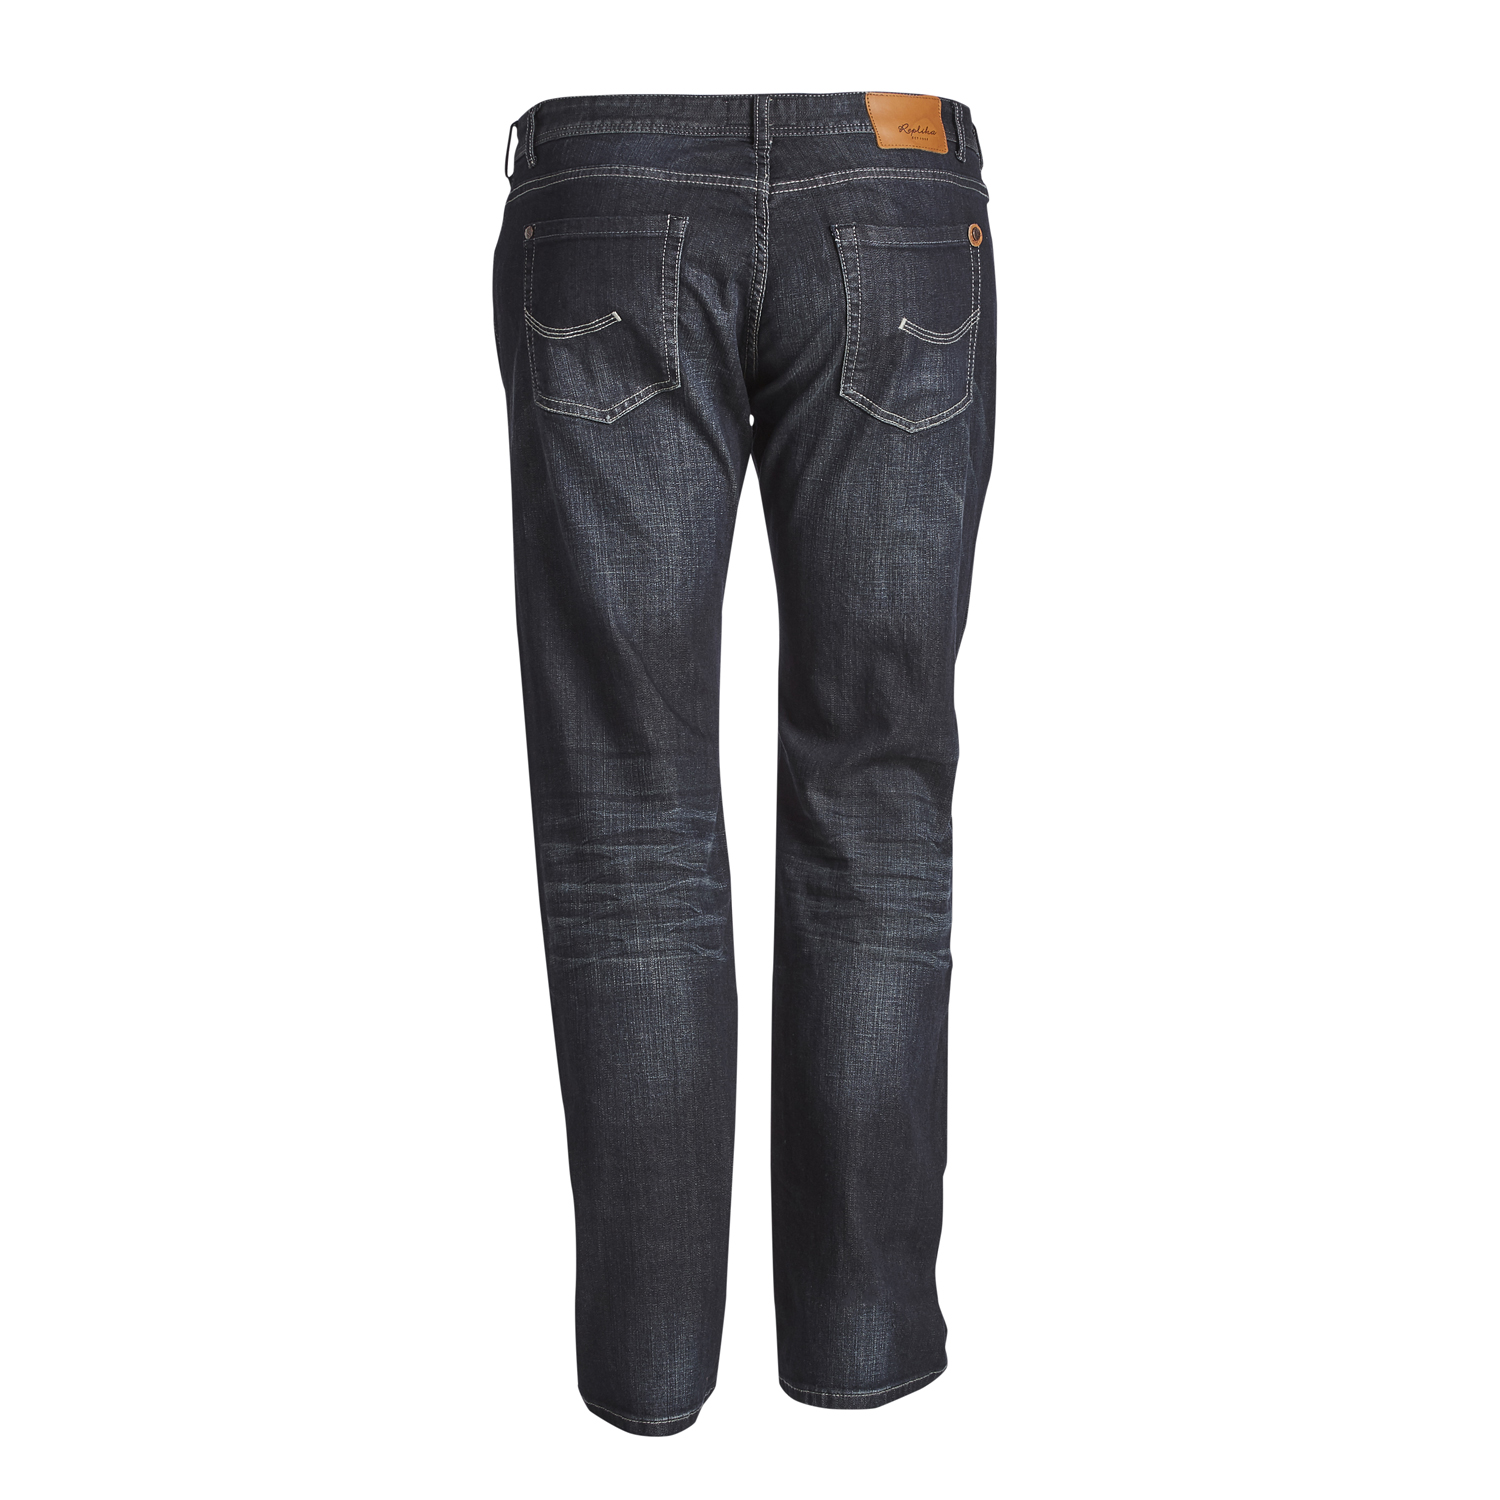 Übergrößen Herren Jeans von Replika - Modell MICK, blue used washed